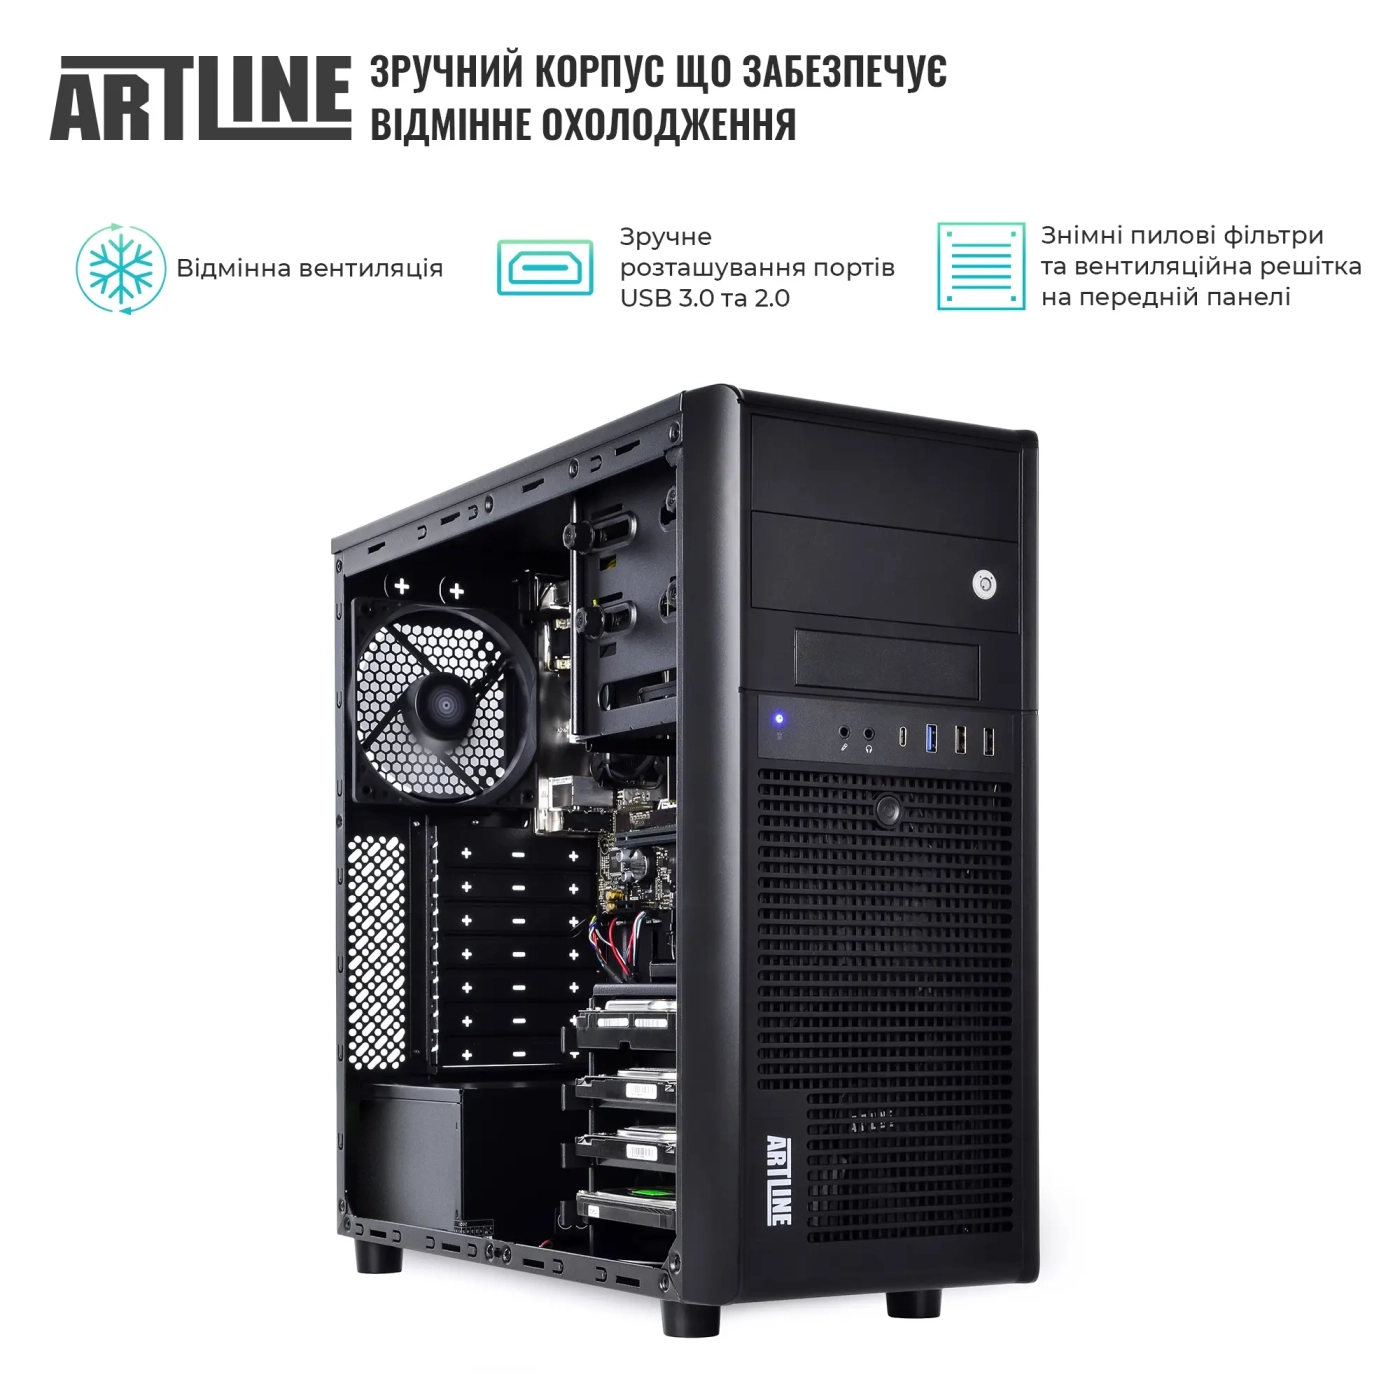 Купить Сервер ARTLINE Business T38 (T38v18) - фото 3